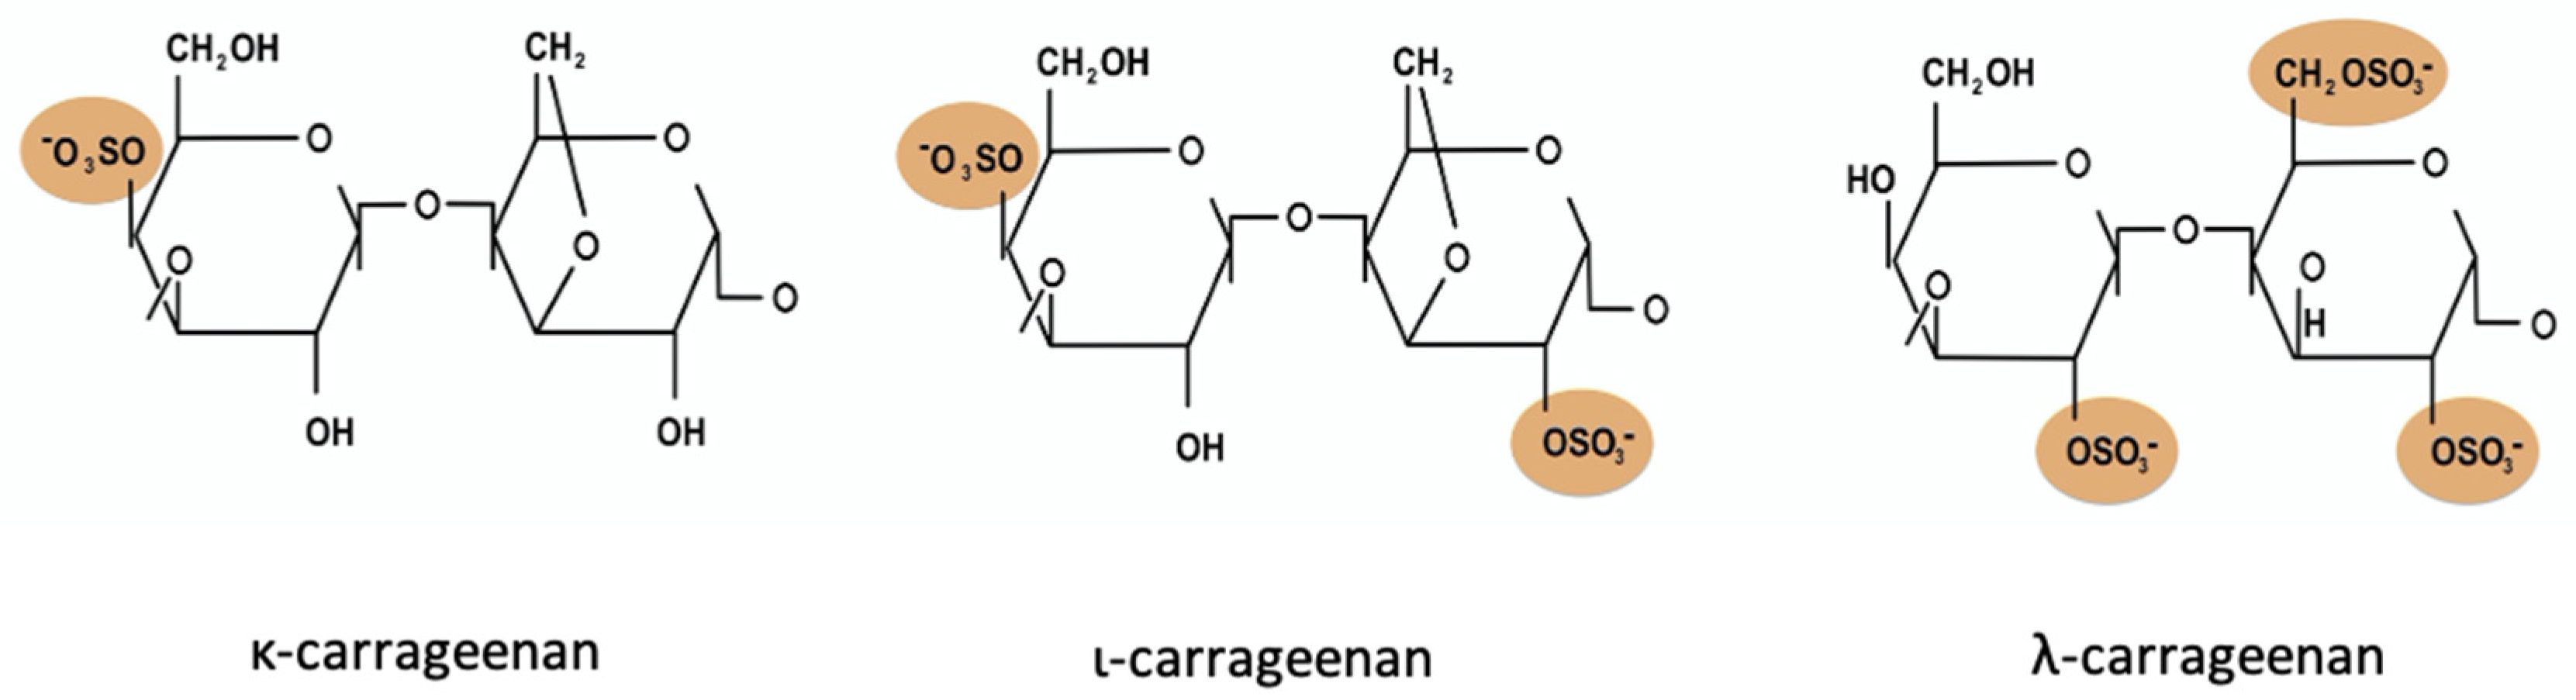 Carrageenan - an overview